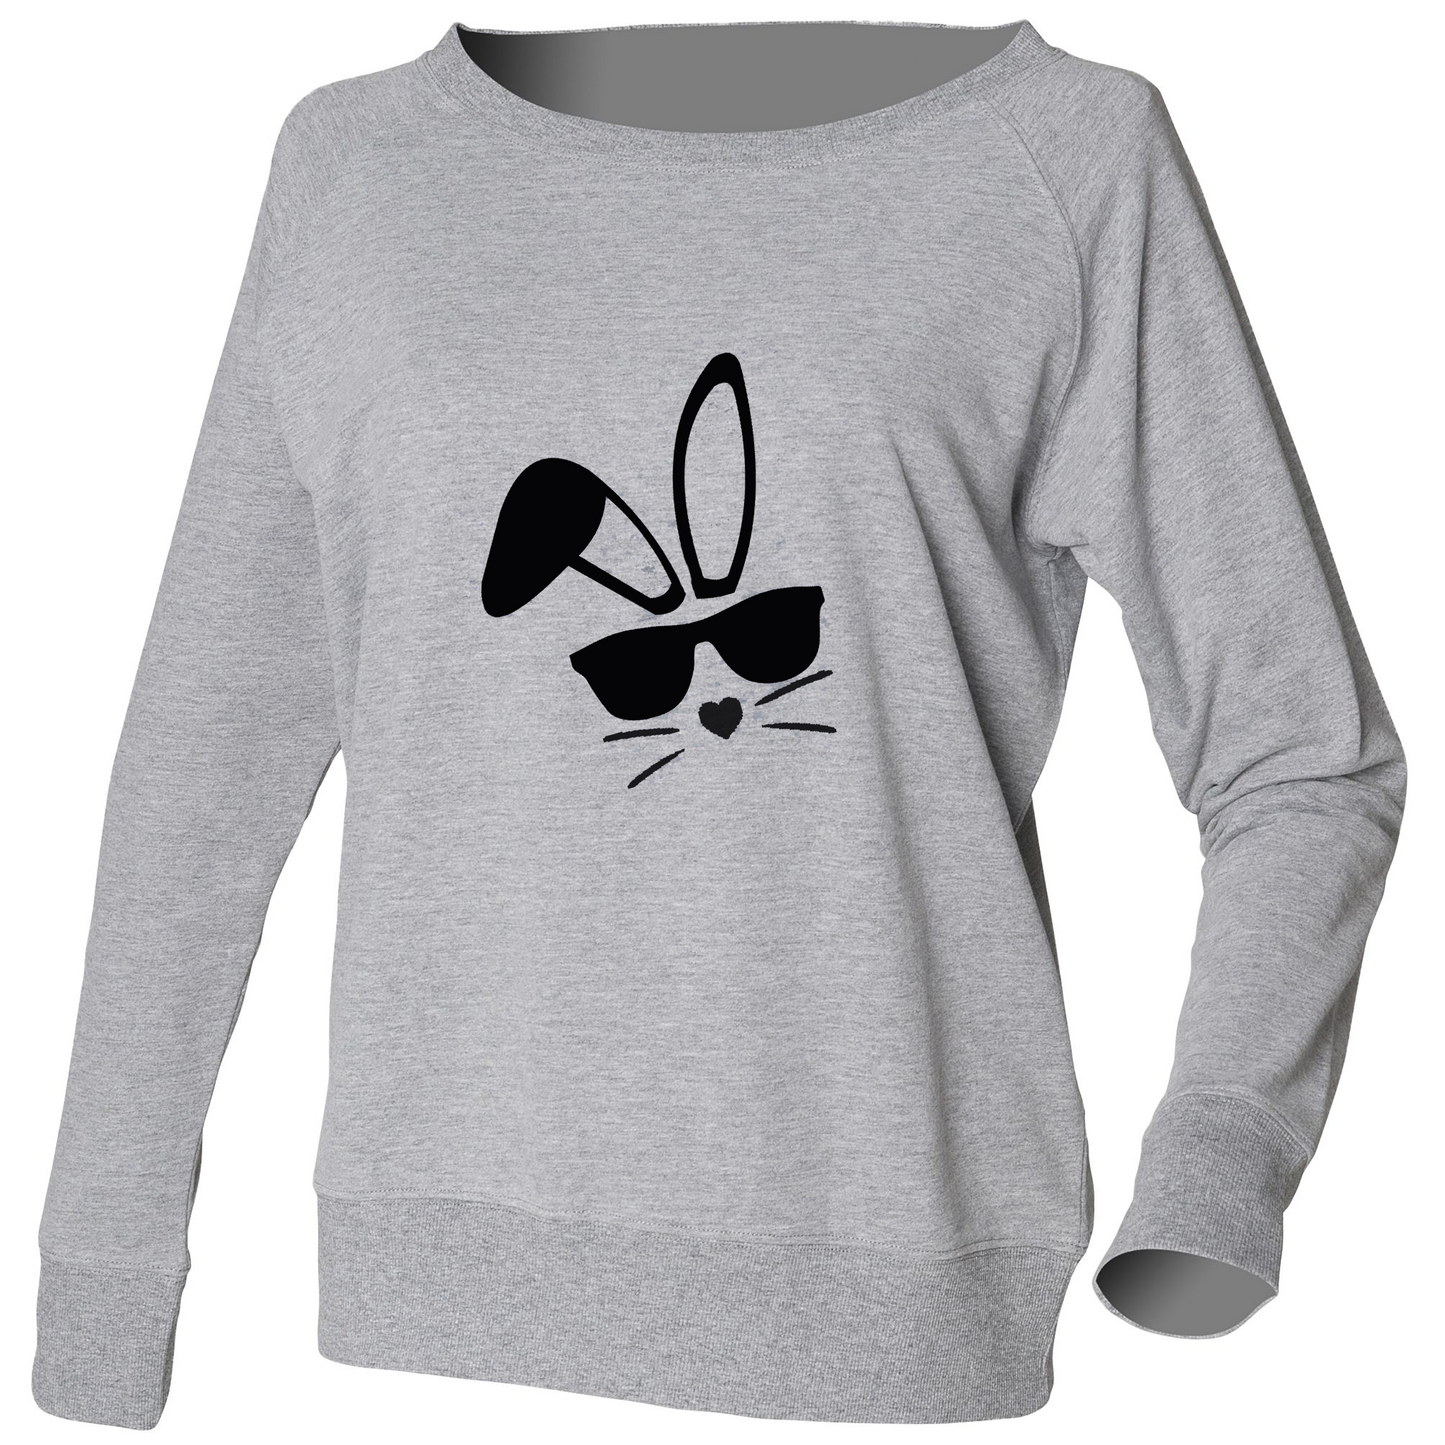 Easter Bunny Slouch Sweatshirt